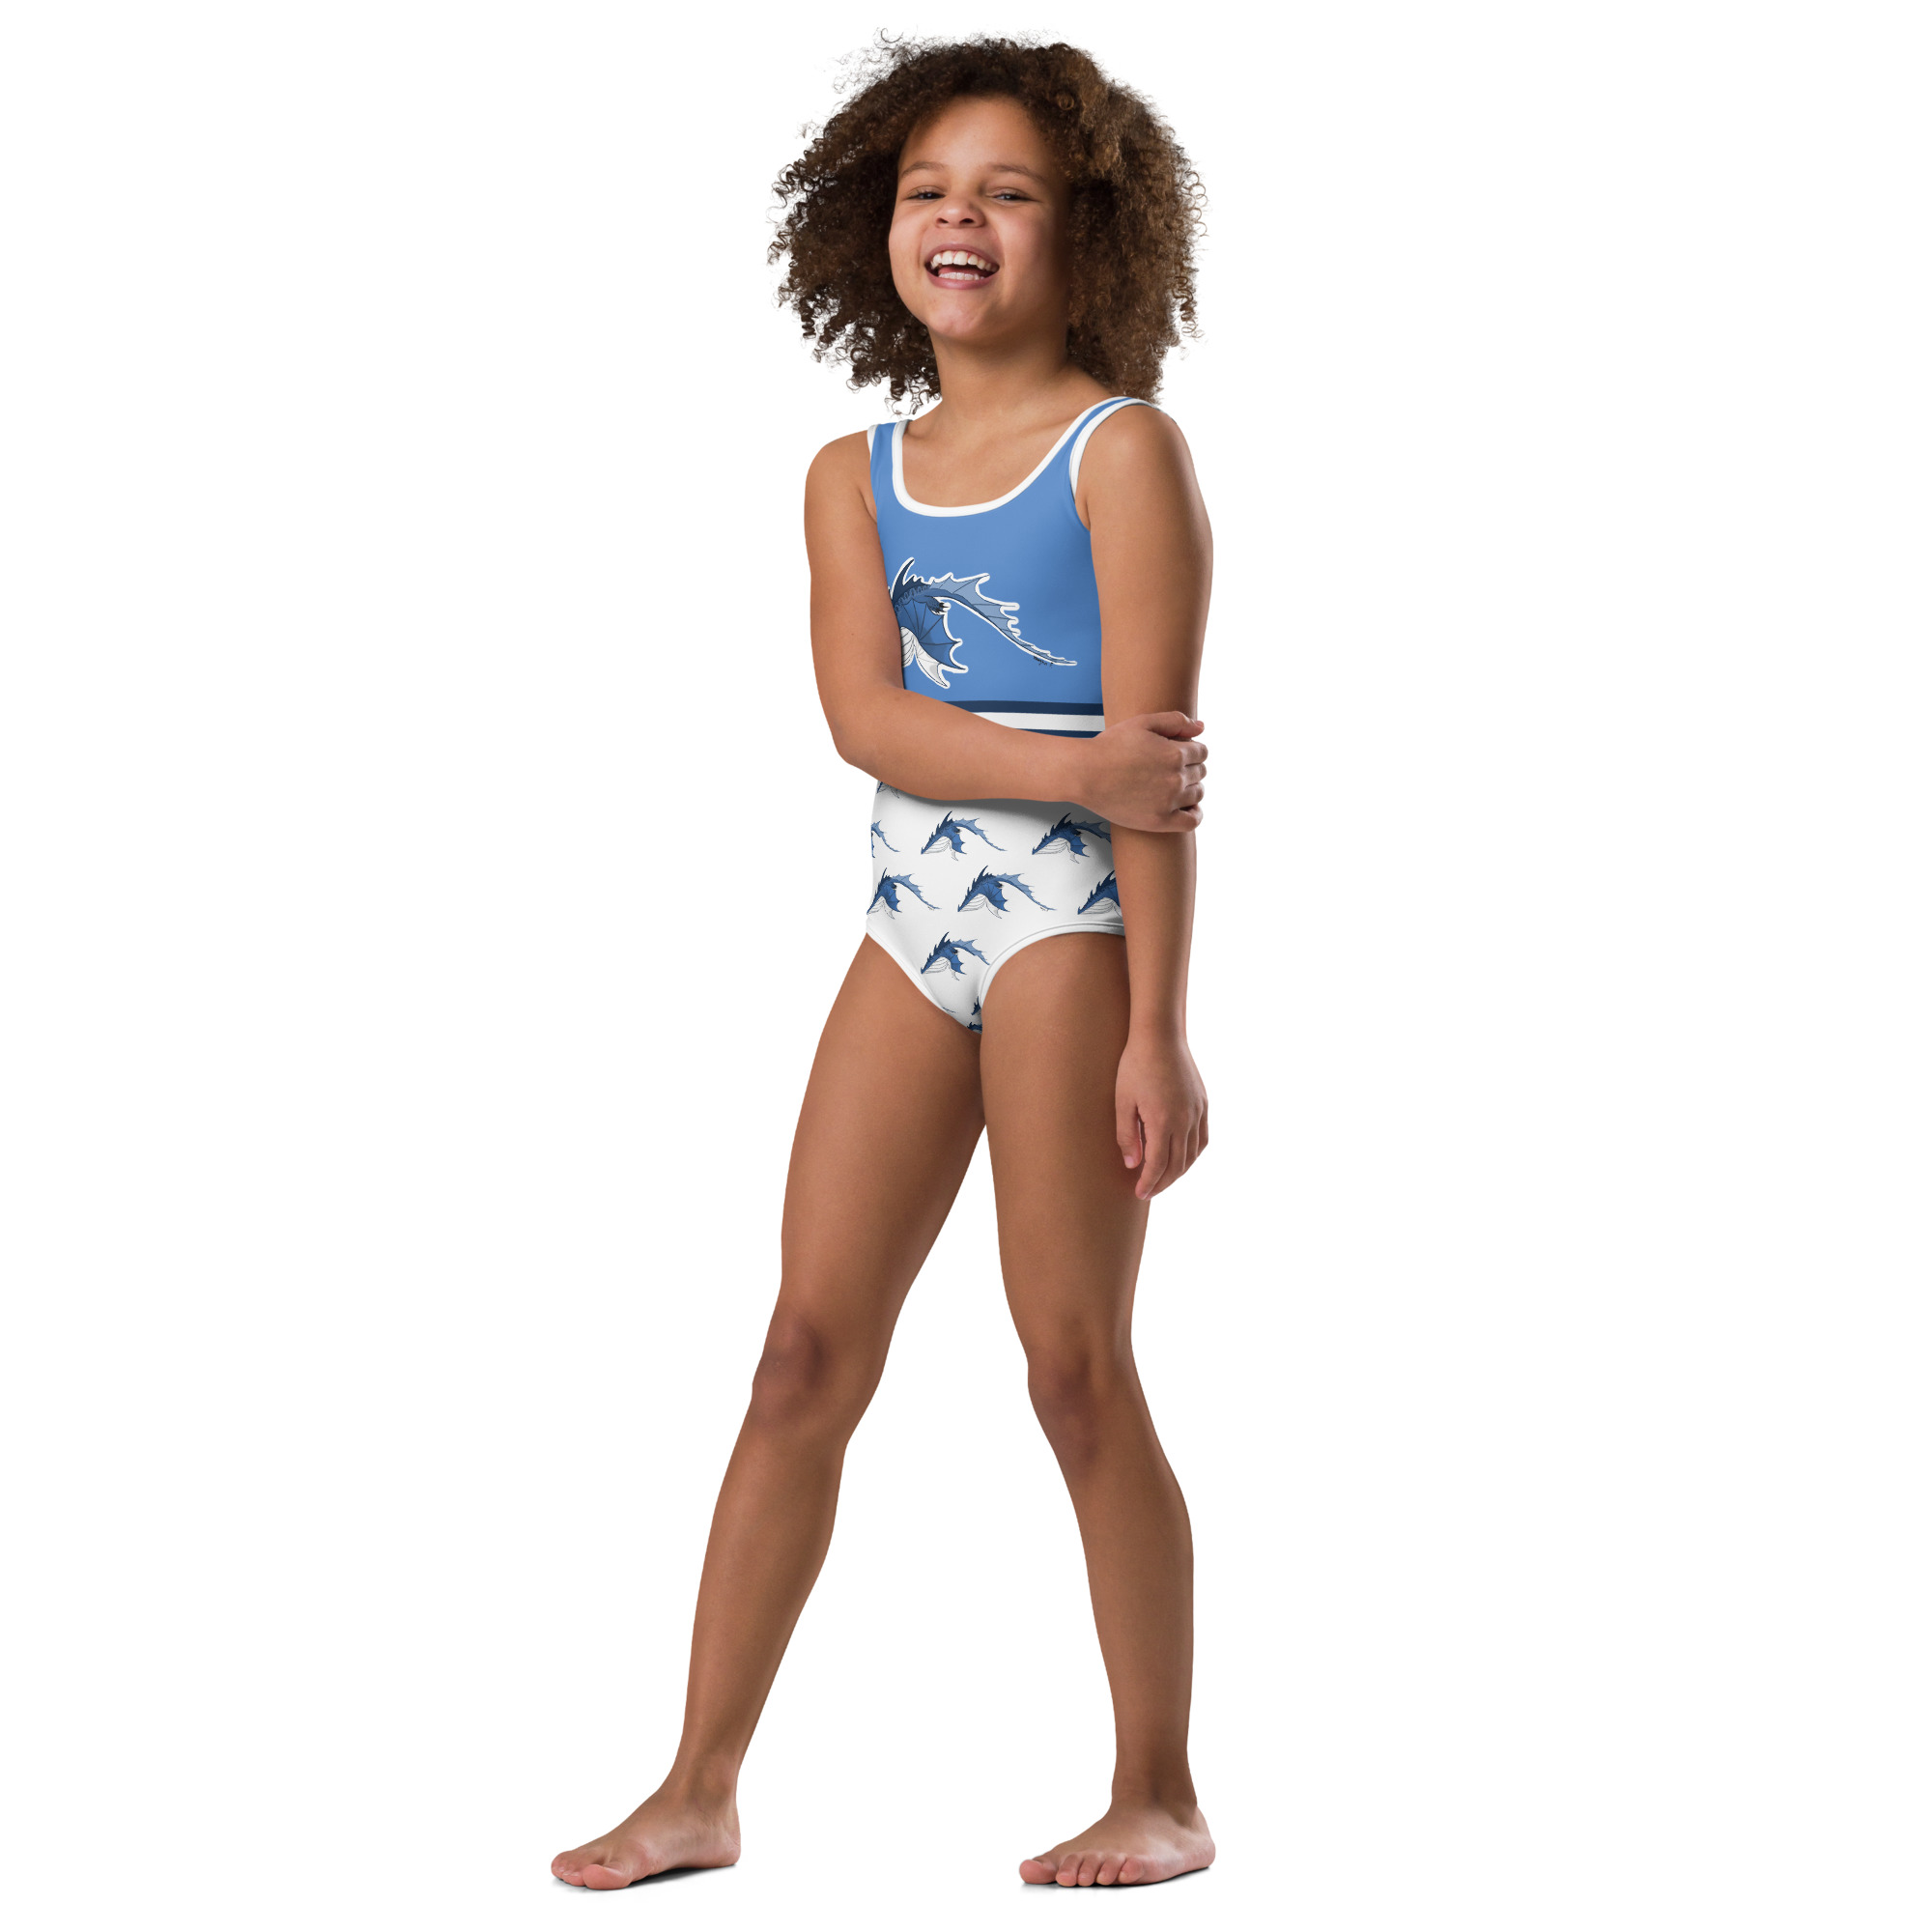 all-over-print-kids-swimsuit-white-left-front-6404c47338974.jpg